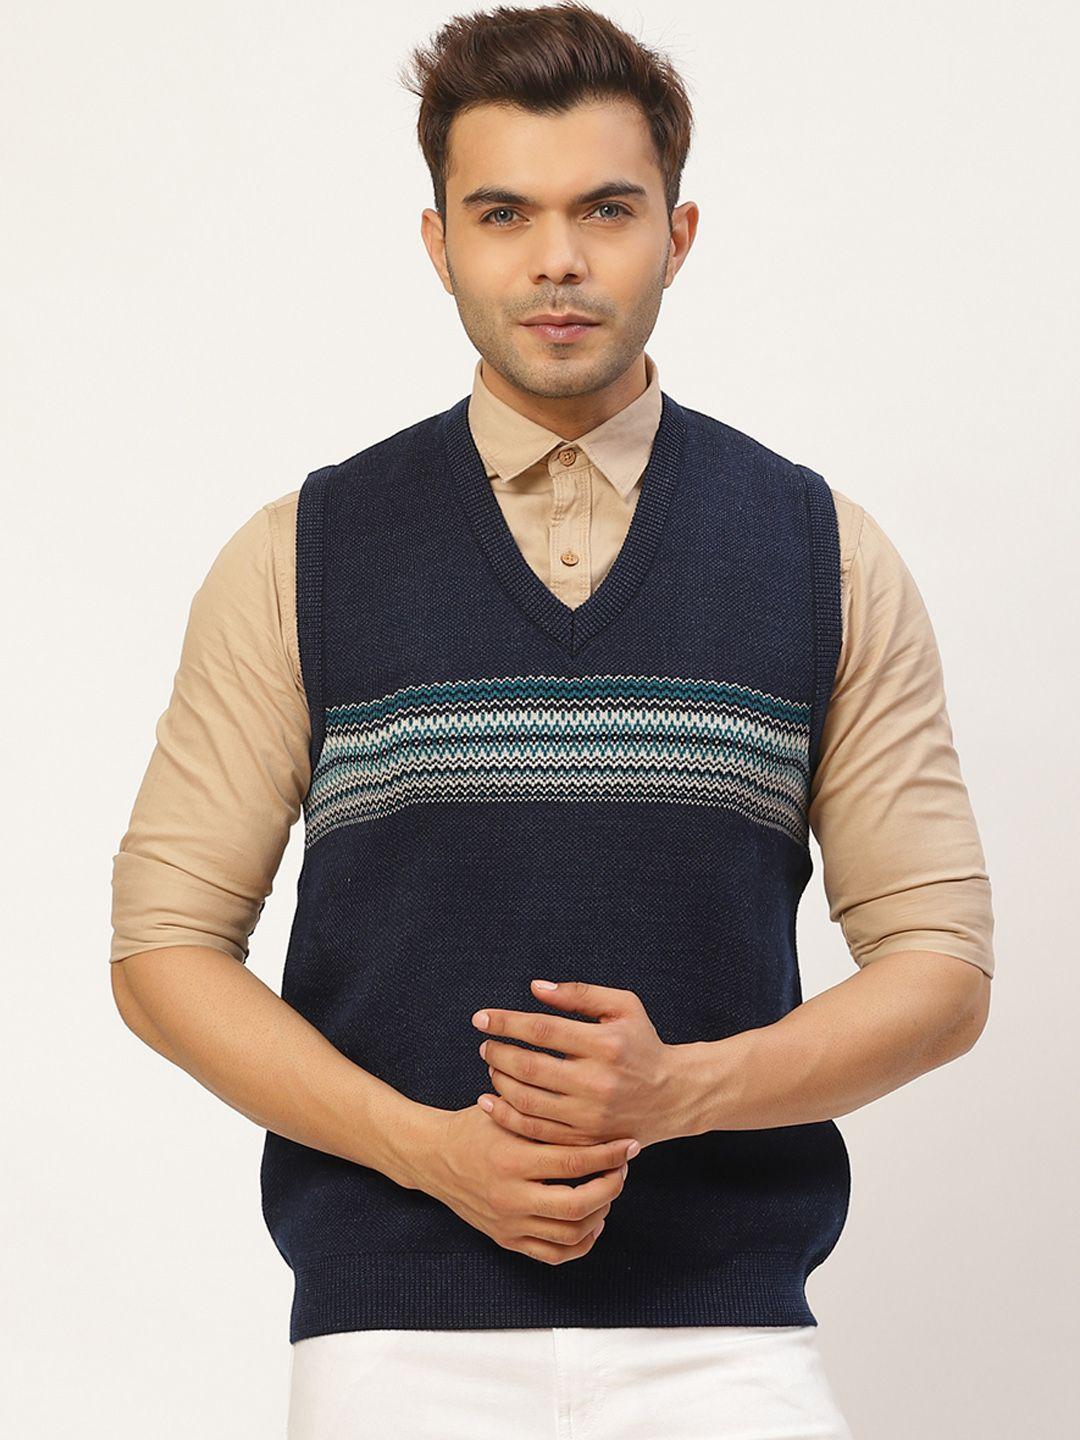 pierre carlo men navy blue striped sweater vest